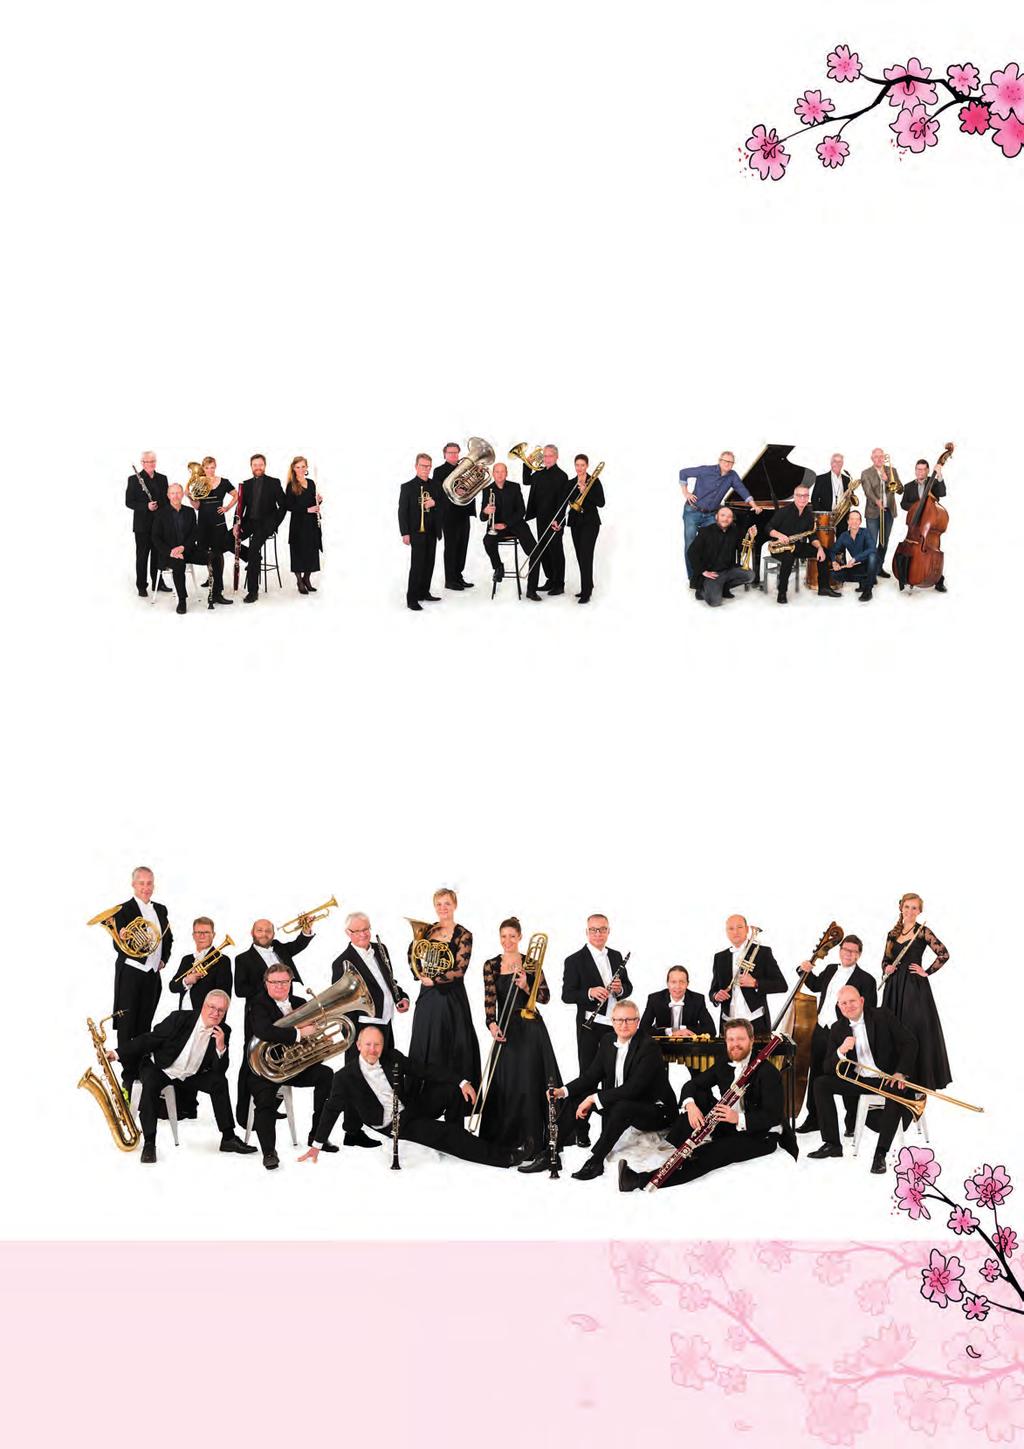 Östgöta Blåsarsymfoniker är en av landets ledande professionella blåsorkestrar med anor från 1500-talet.